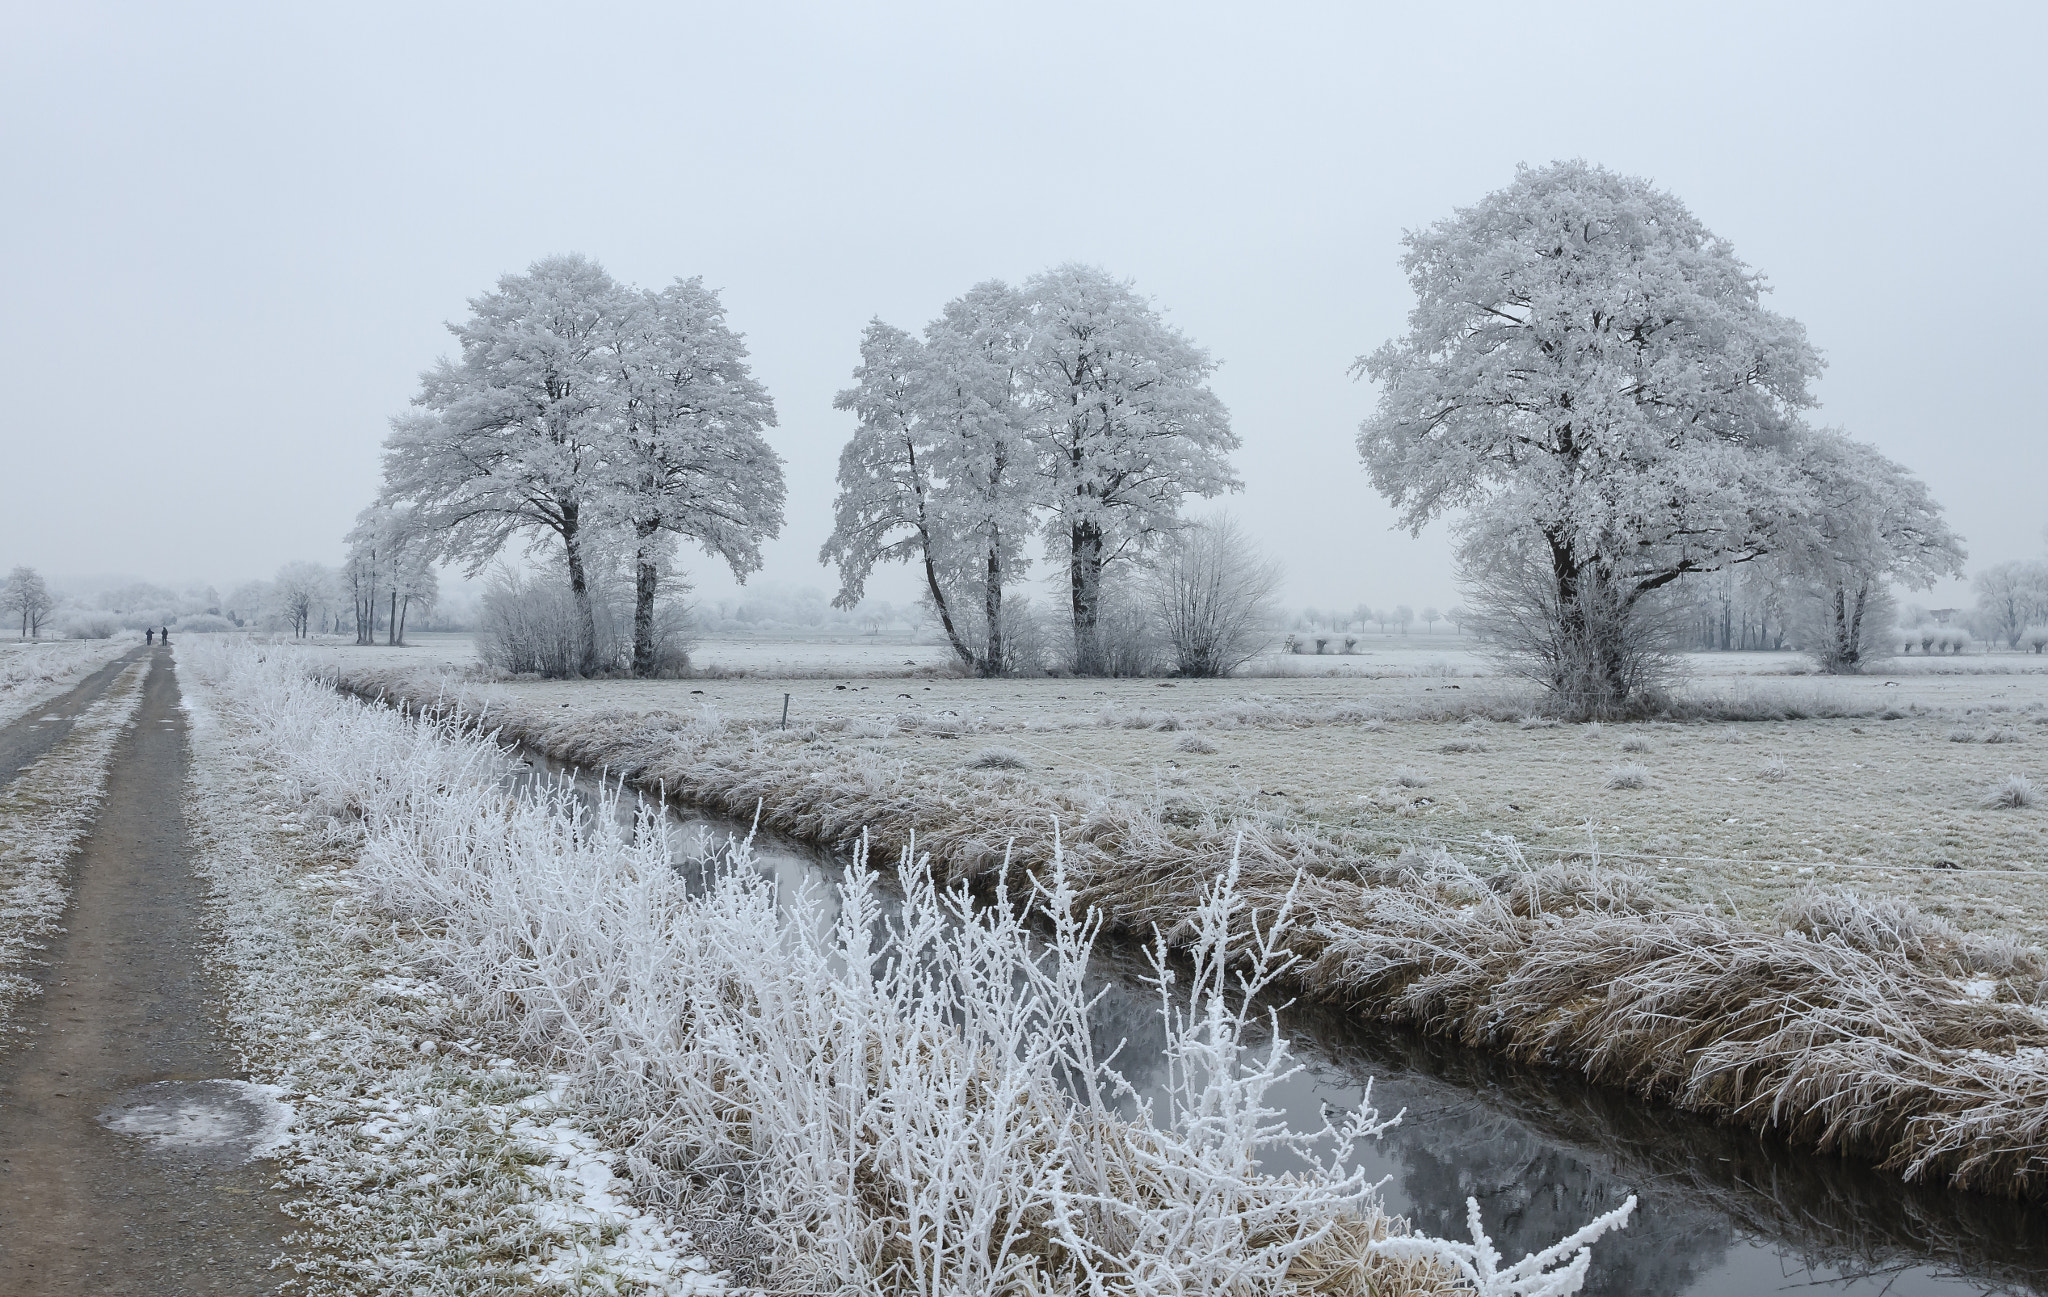 Canon EOS 7D sample photo. Walk trough a quiet winter landscape photography